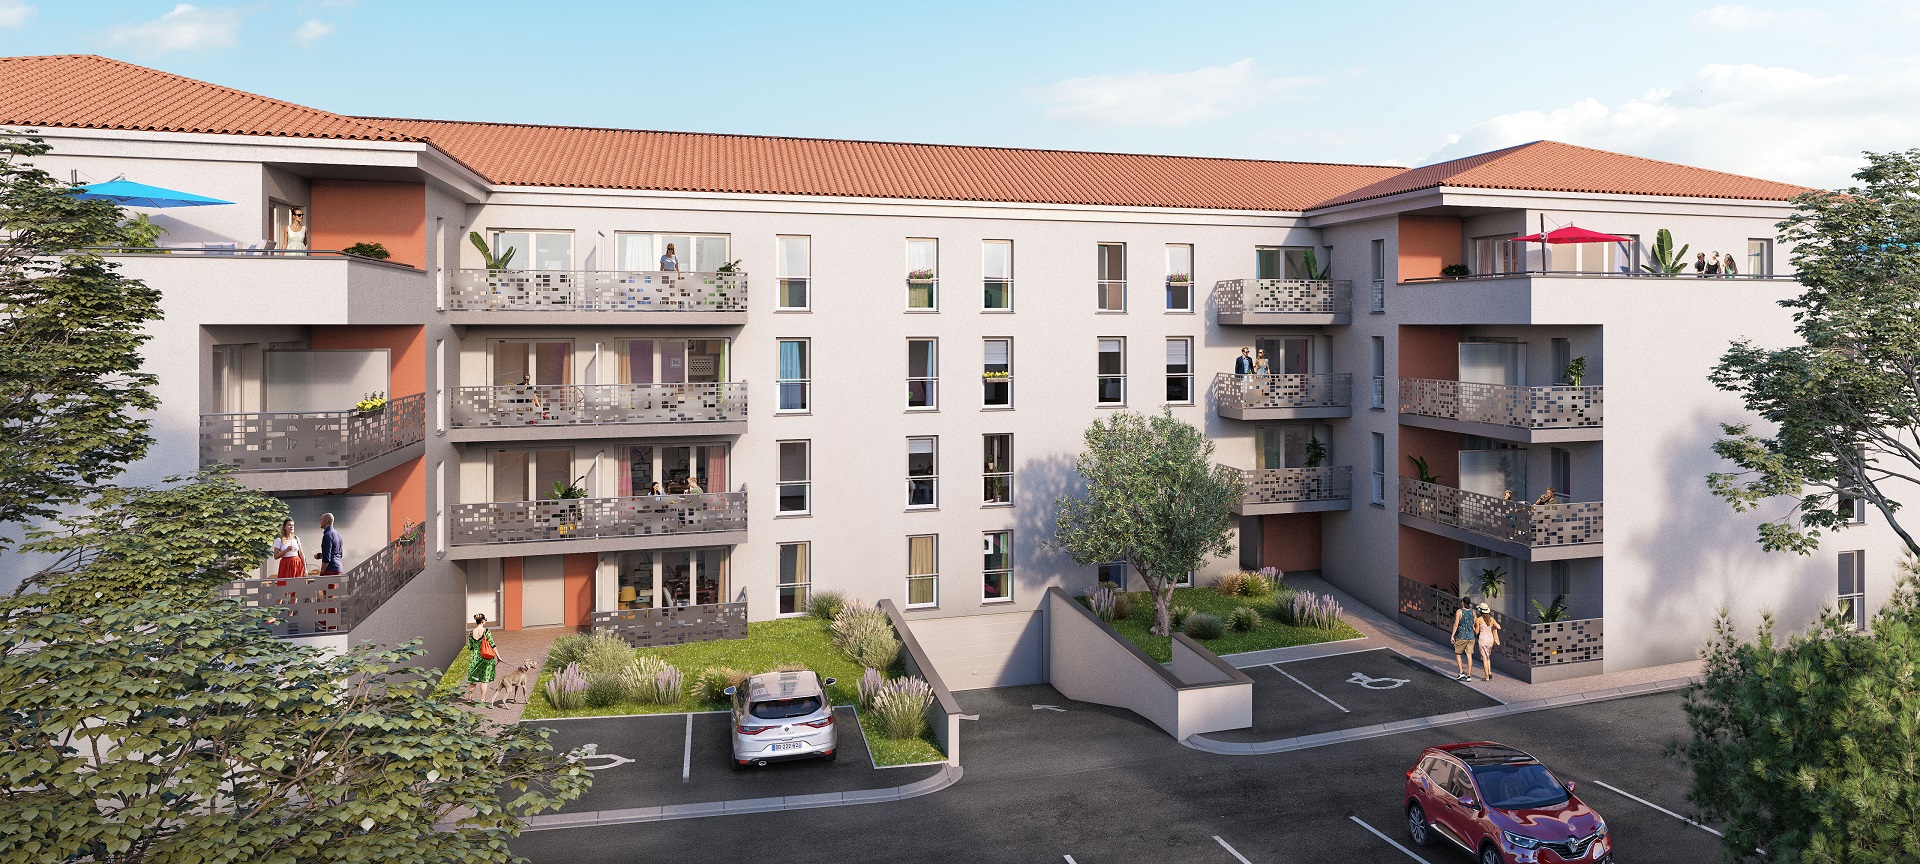 Programme immobilier EDE6 appartement à Le Luc (83340) Au sein d'une petite commune